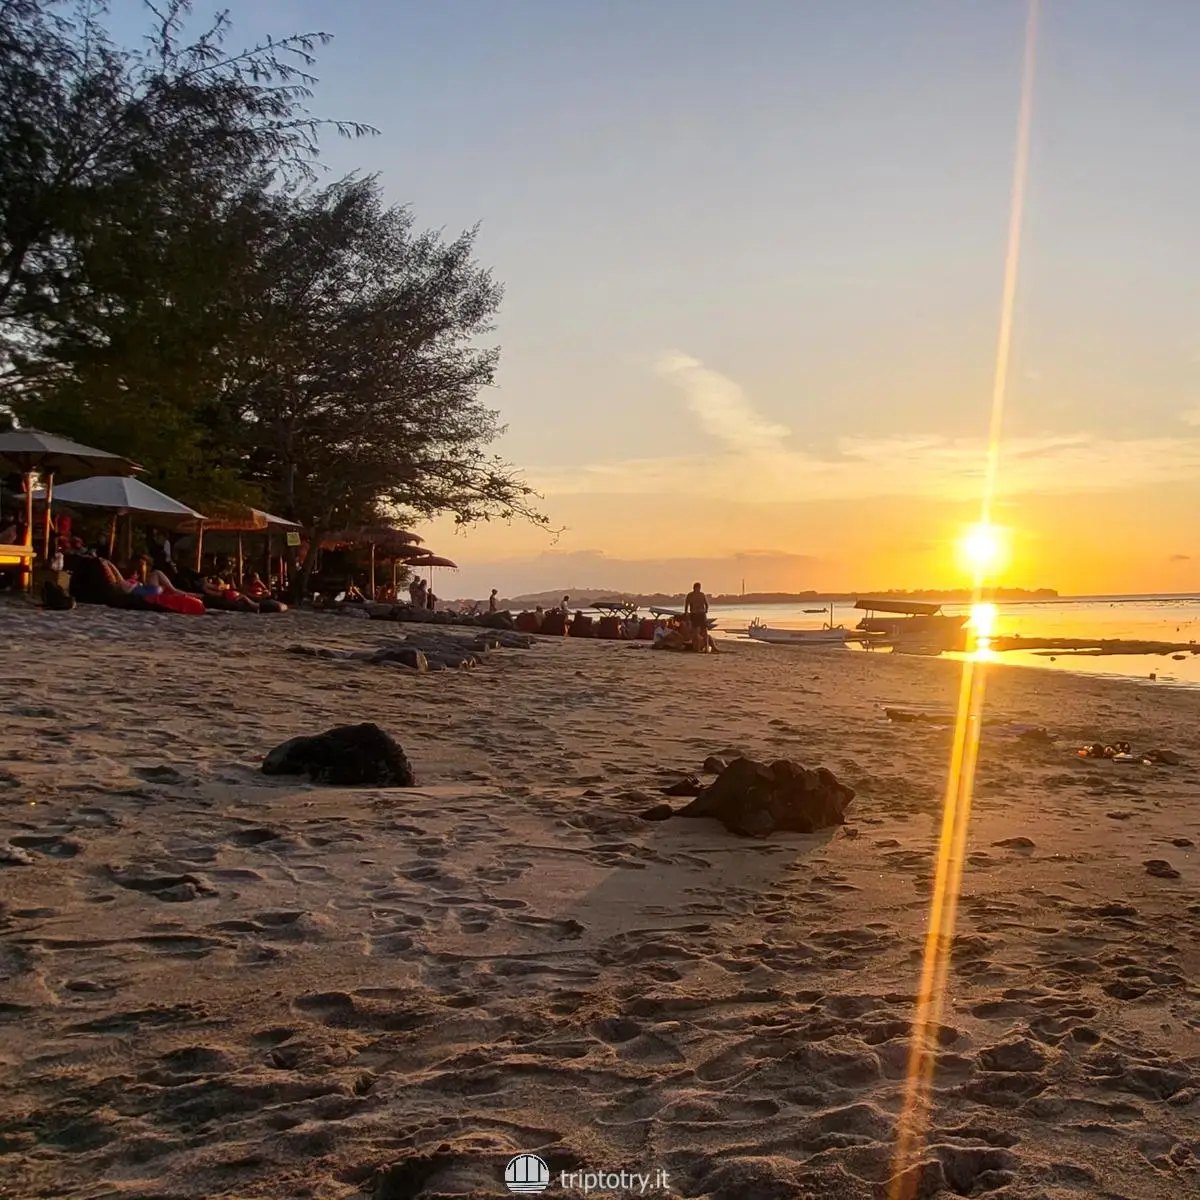 Isole Gili quale scegliere? Aperitivo al tramonto sulla spiaggia con sole sul mare alle isole Gili in Indonesia - the best gili island to visit